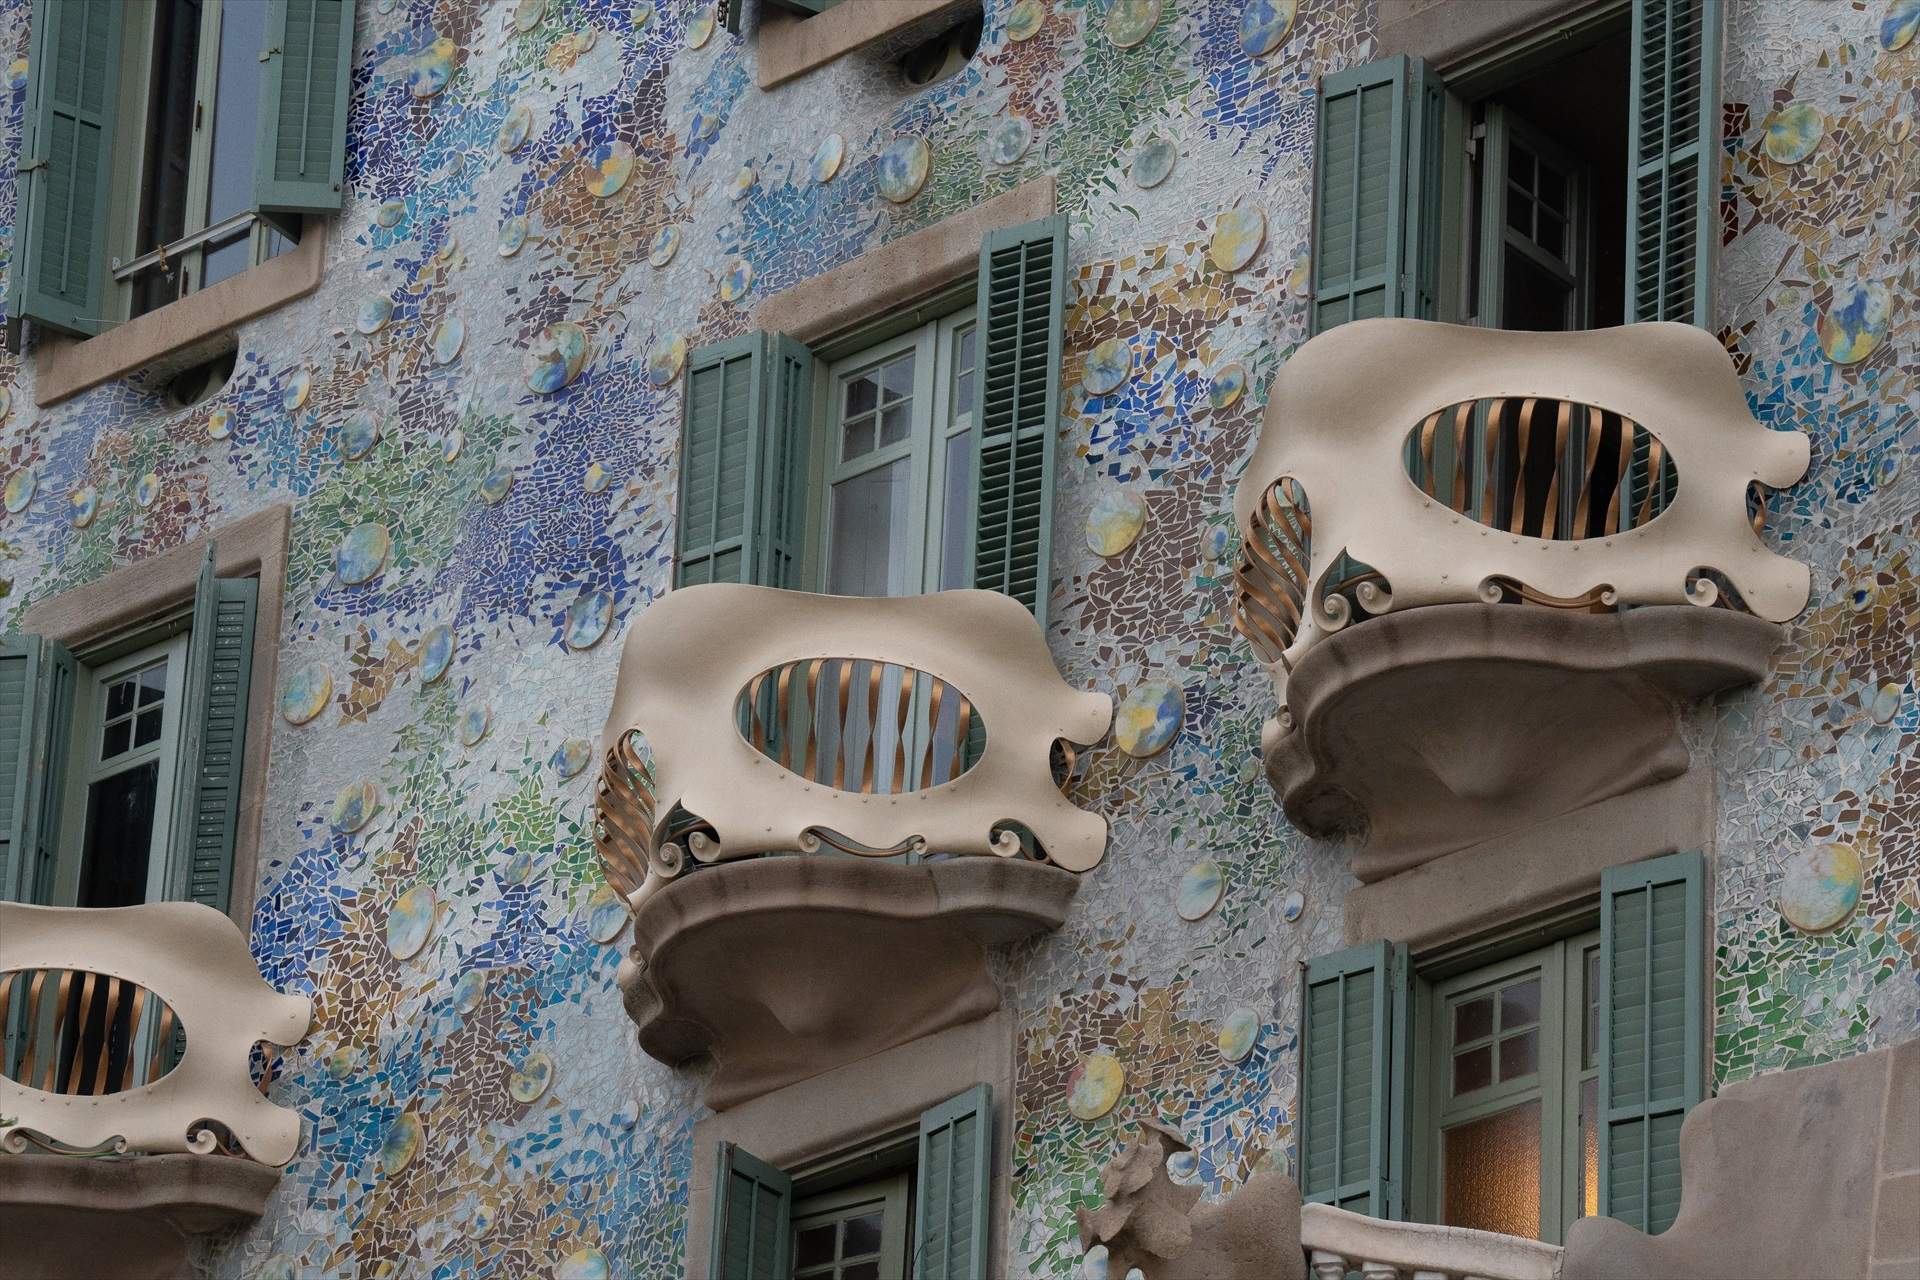 La Casa Batlló, un dels monuments més visitats de Barcelona, duplica beneficis